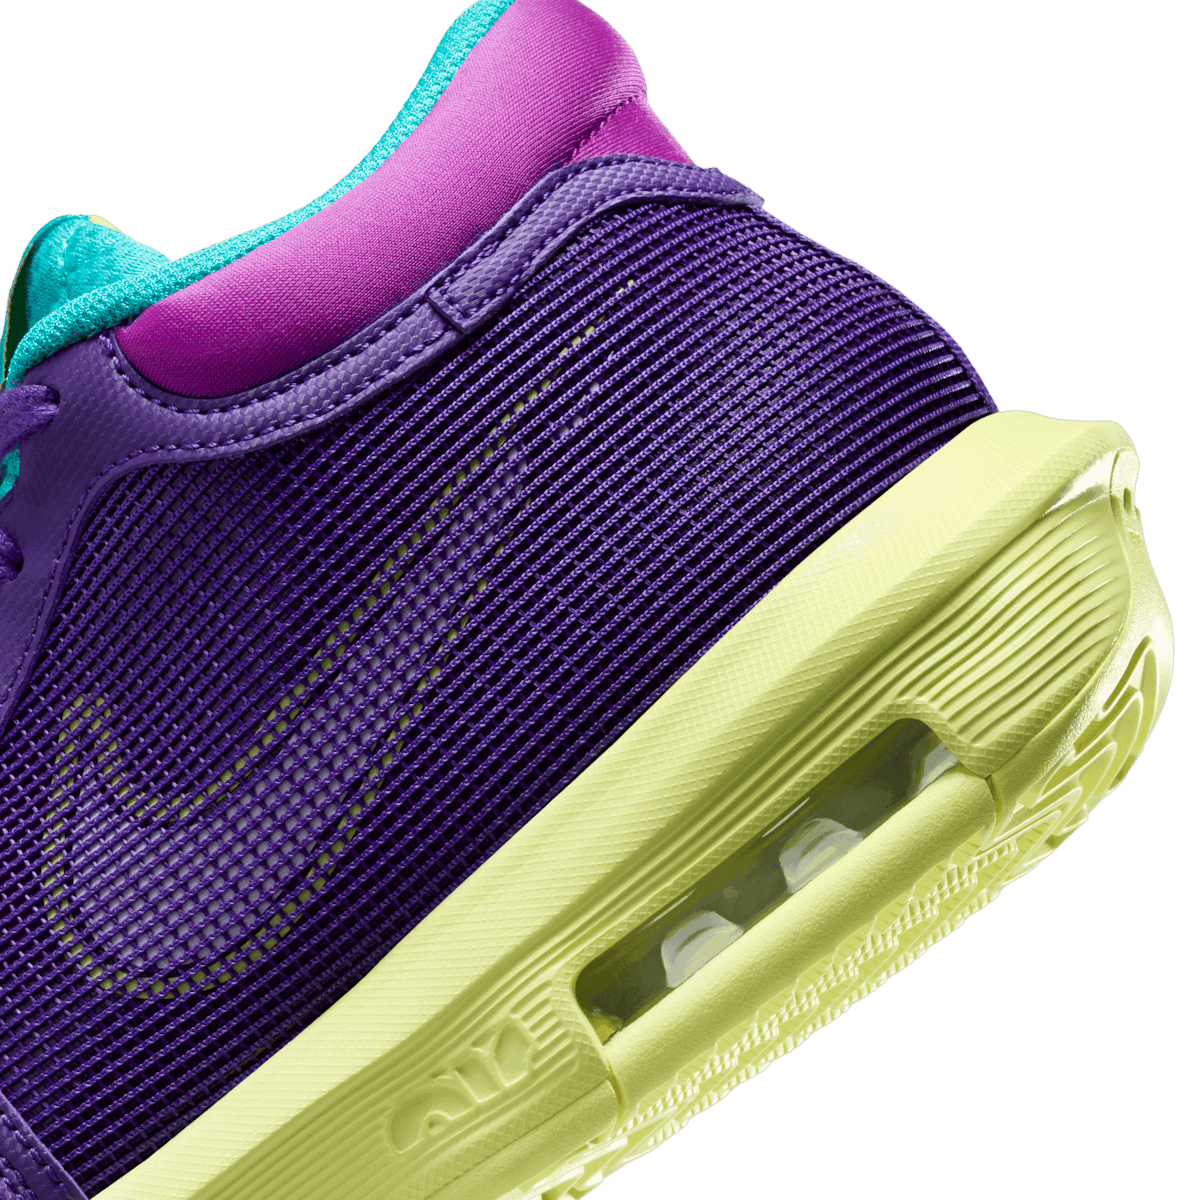 Nike LeBron Witness 8 Field Purple Angle 5